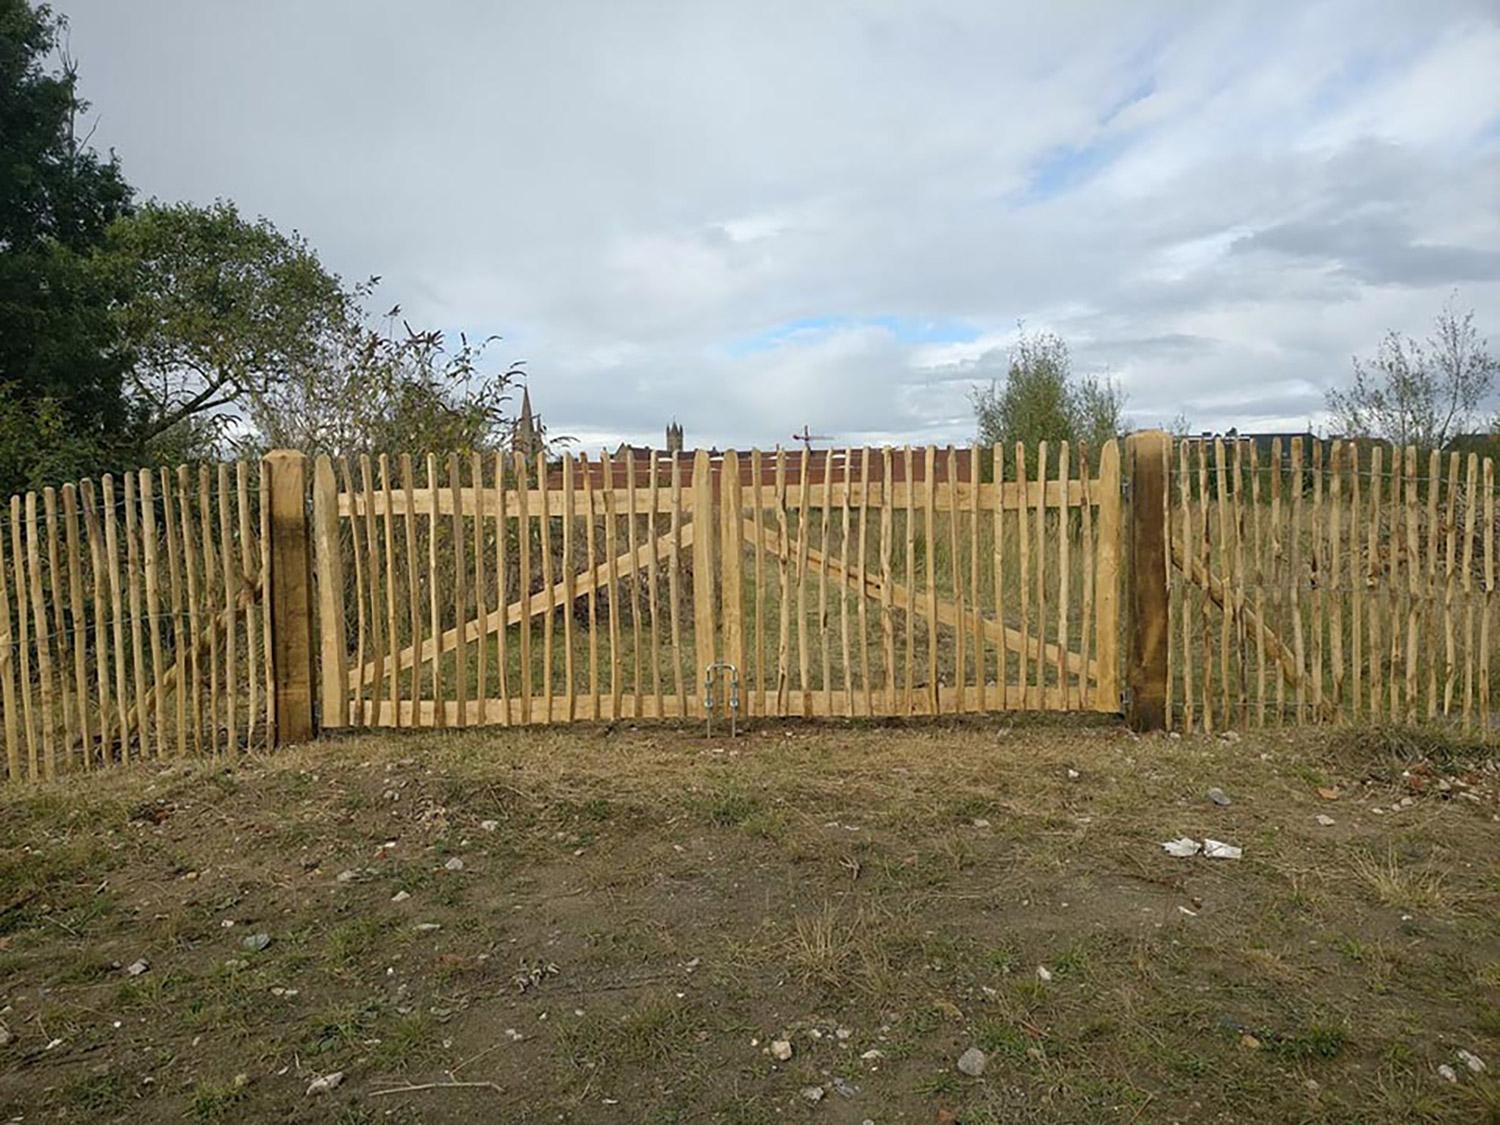 Kastanje poorten passen in zowat elke landelijke omgeving.